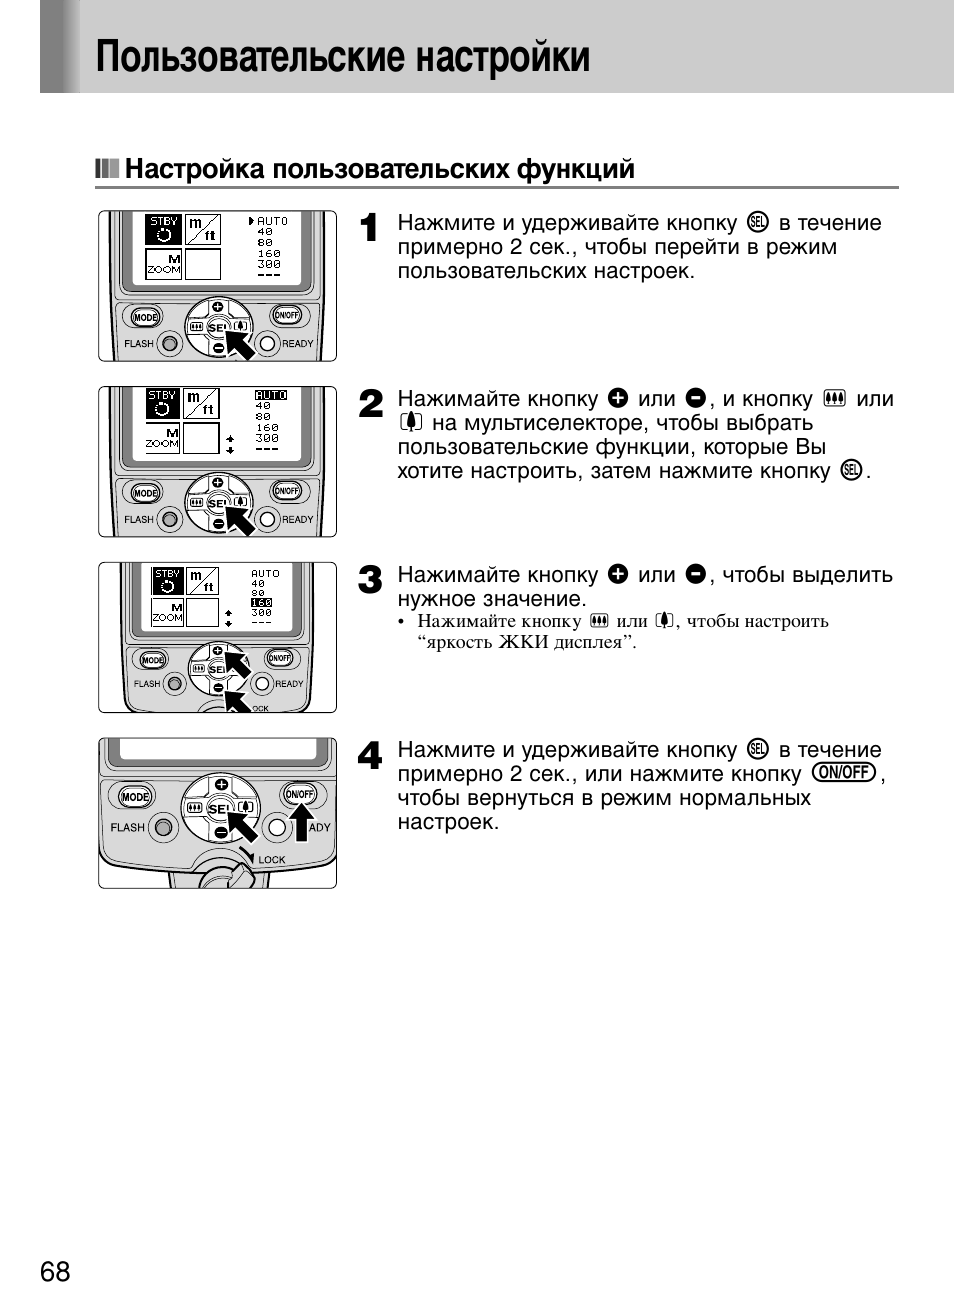 Настройка пользовательских функций, Ц пользовательские настройки | Инструкция по эксплуатации Nikon Speedlite SB-800 | Страница 74 / 132